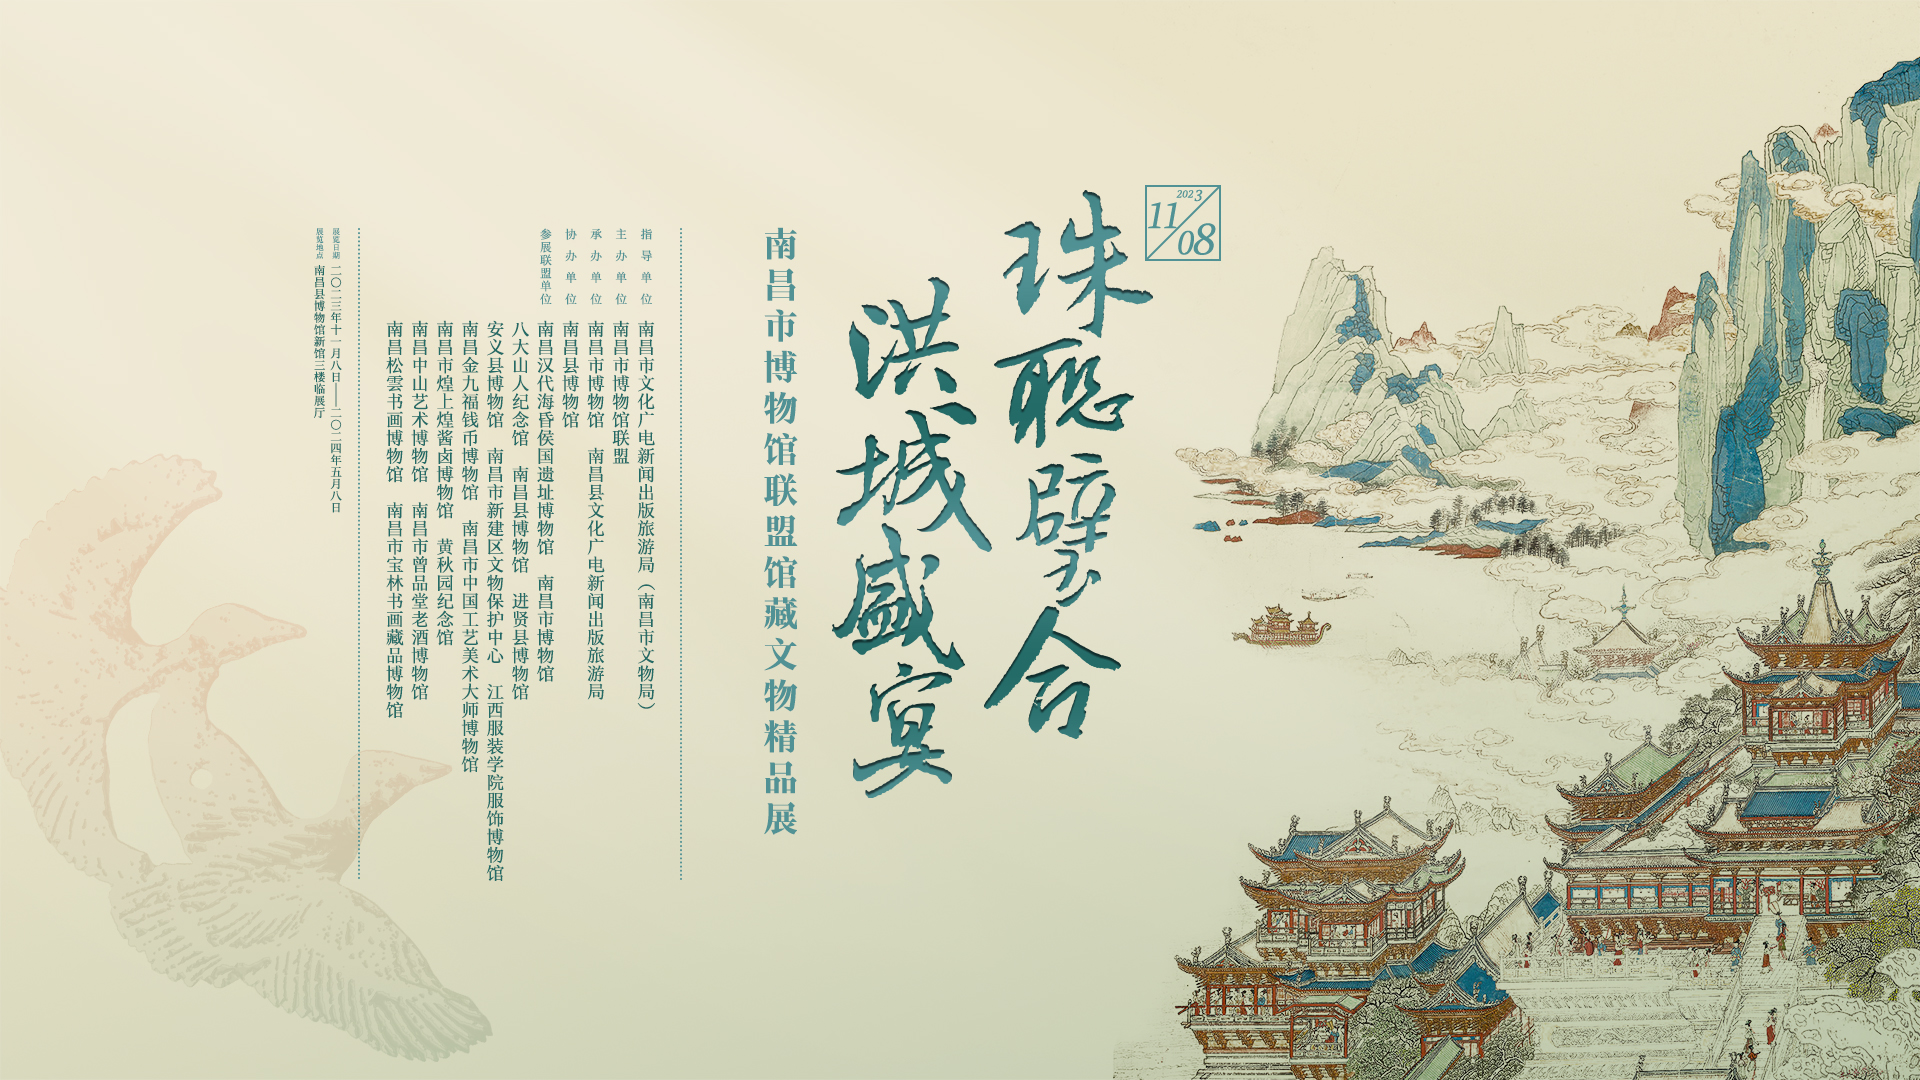 珠联璧合·洪城盛宴——南昌市博物馆联盟馆藏文物精品展